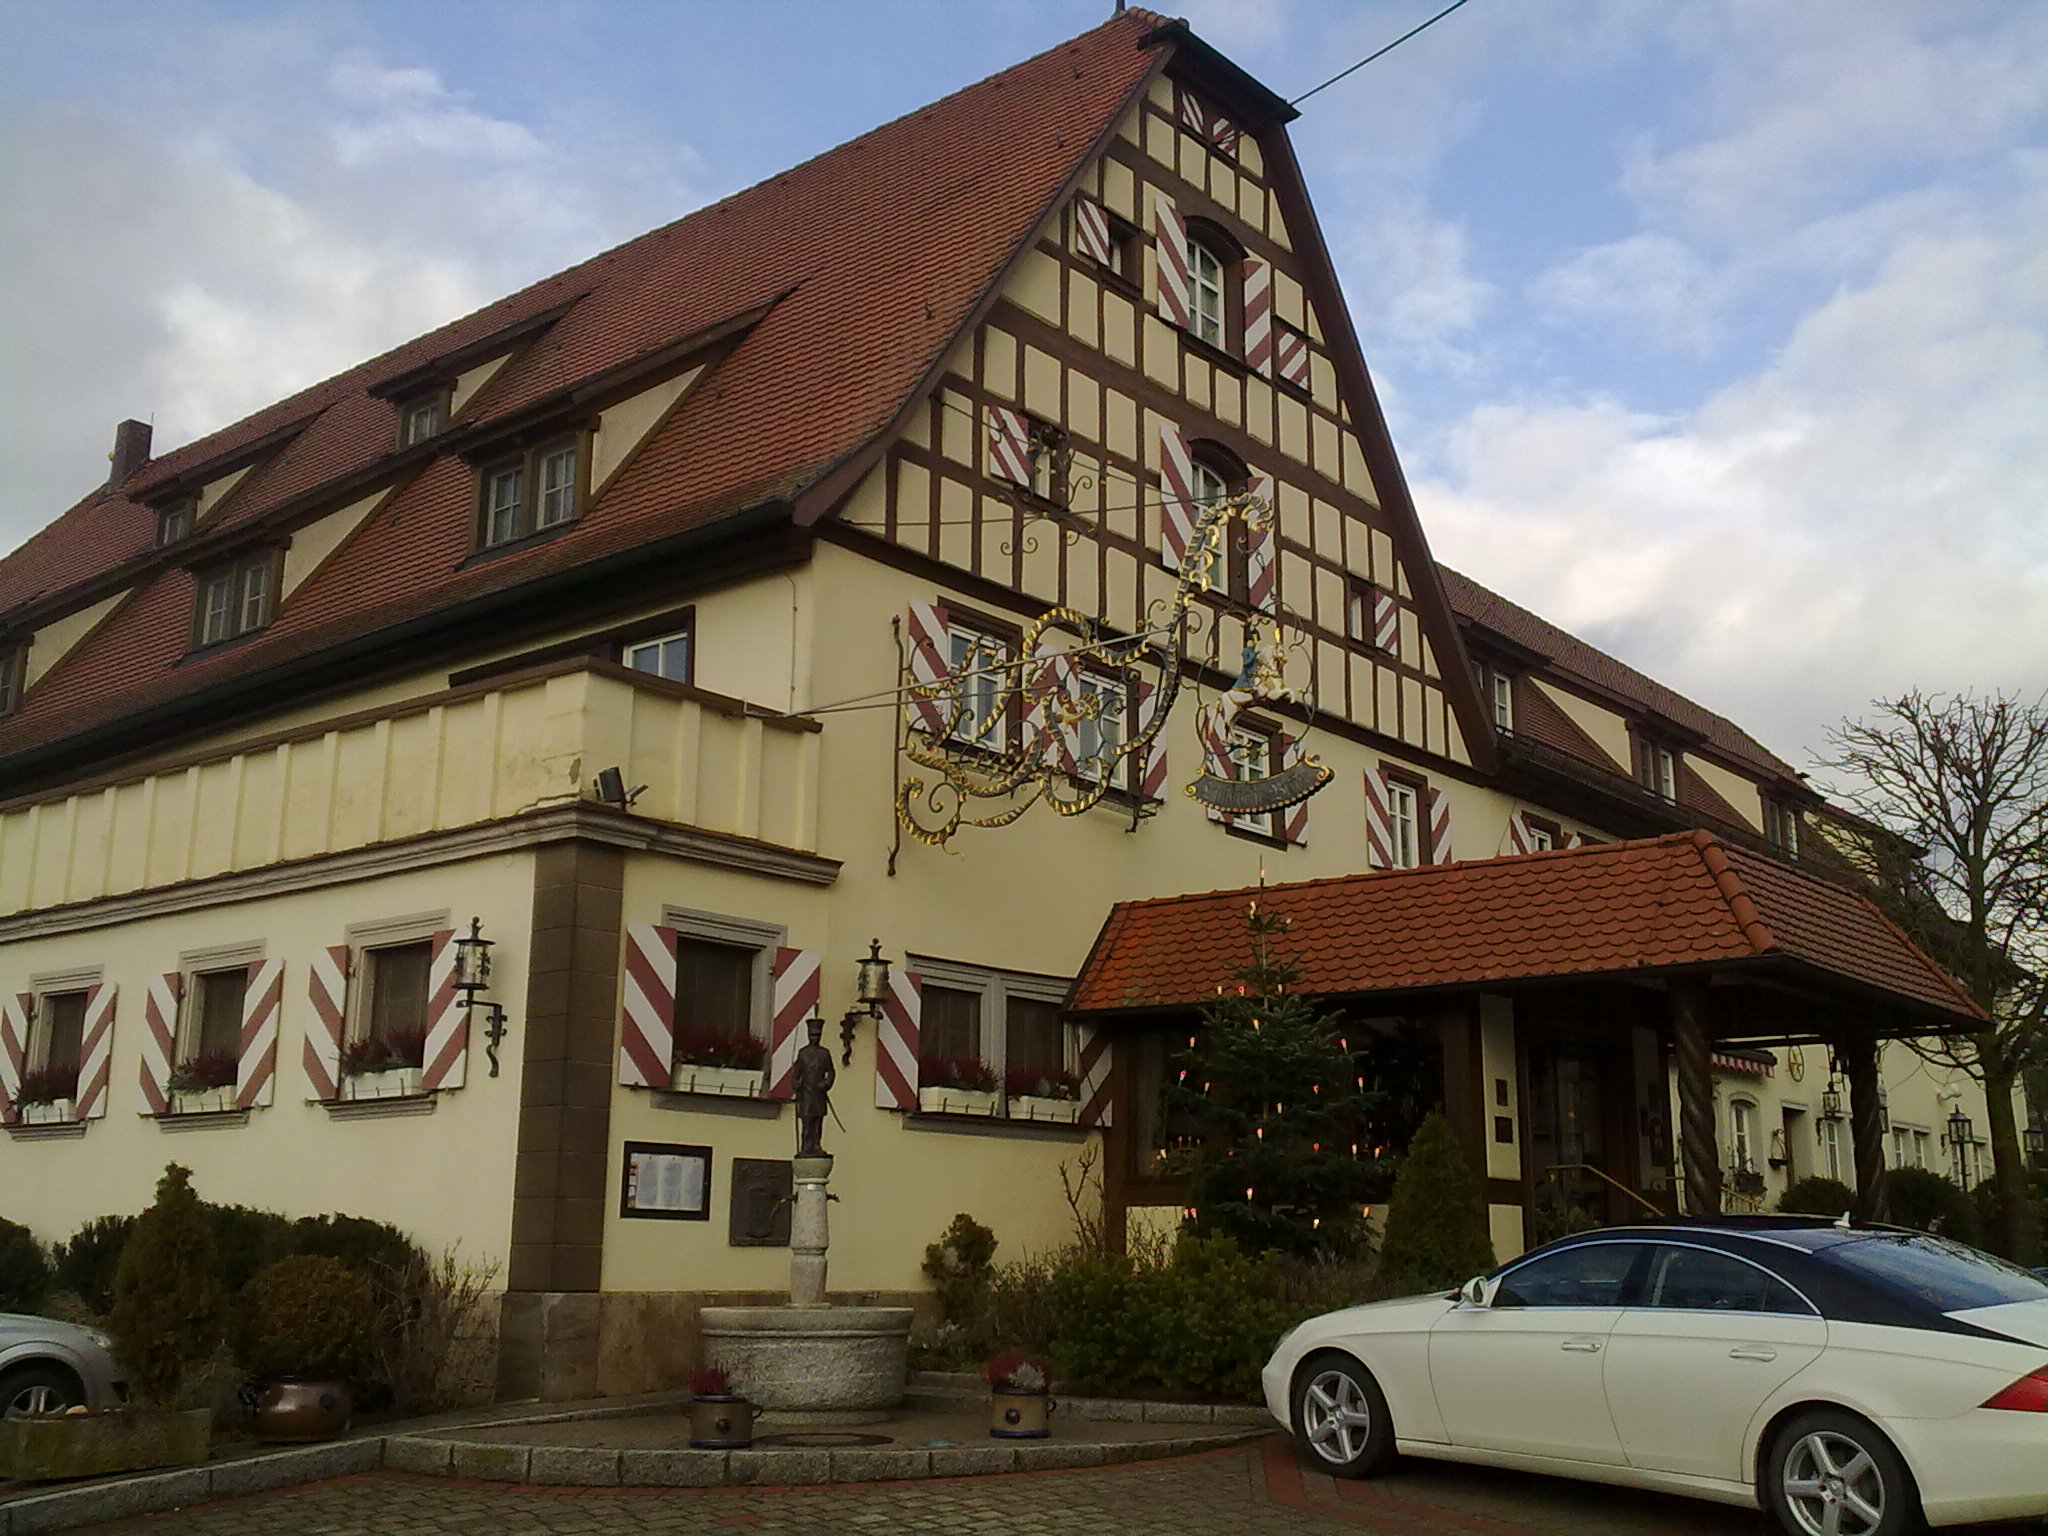 Landwehr-Bräu
Brauerei-Gasthof-Hotel